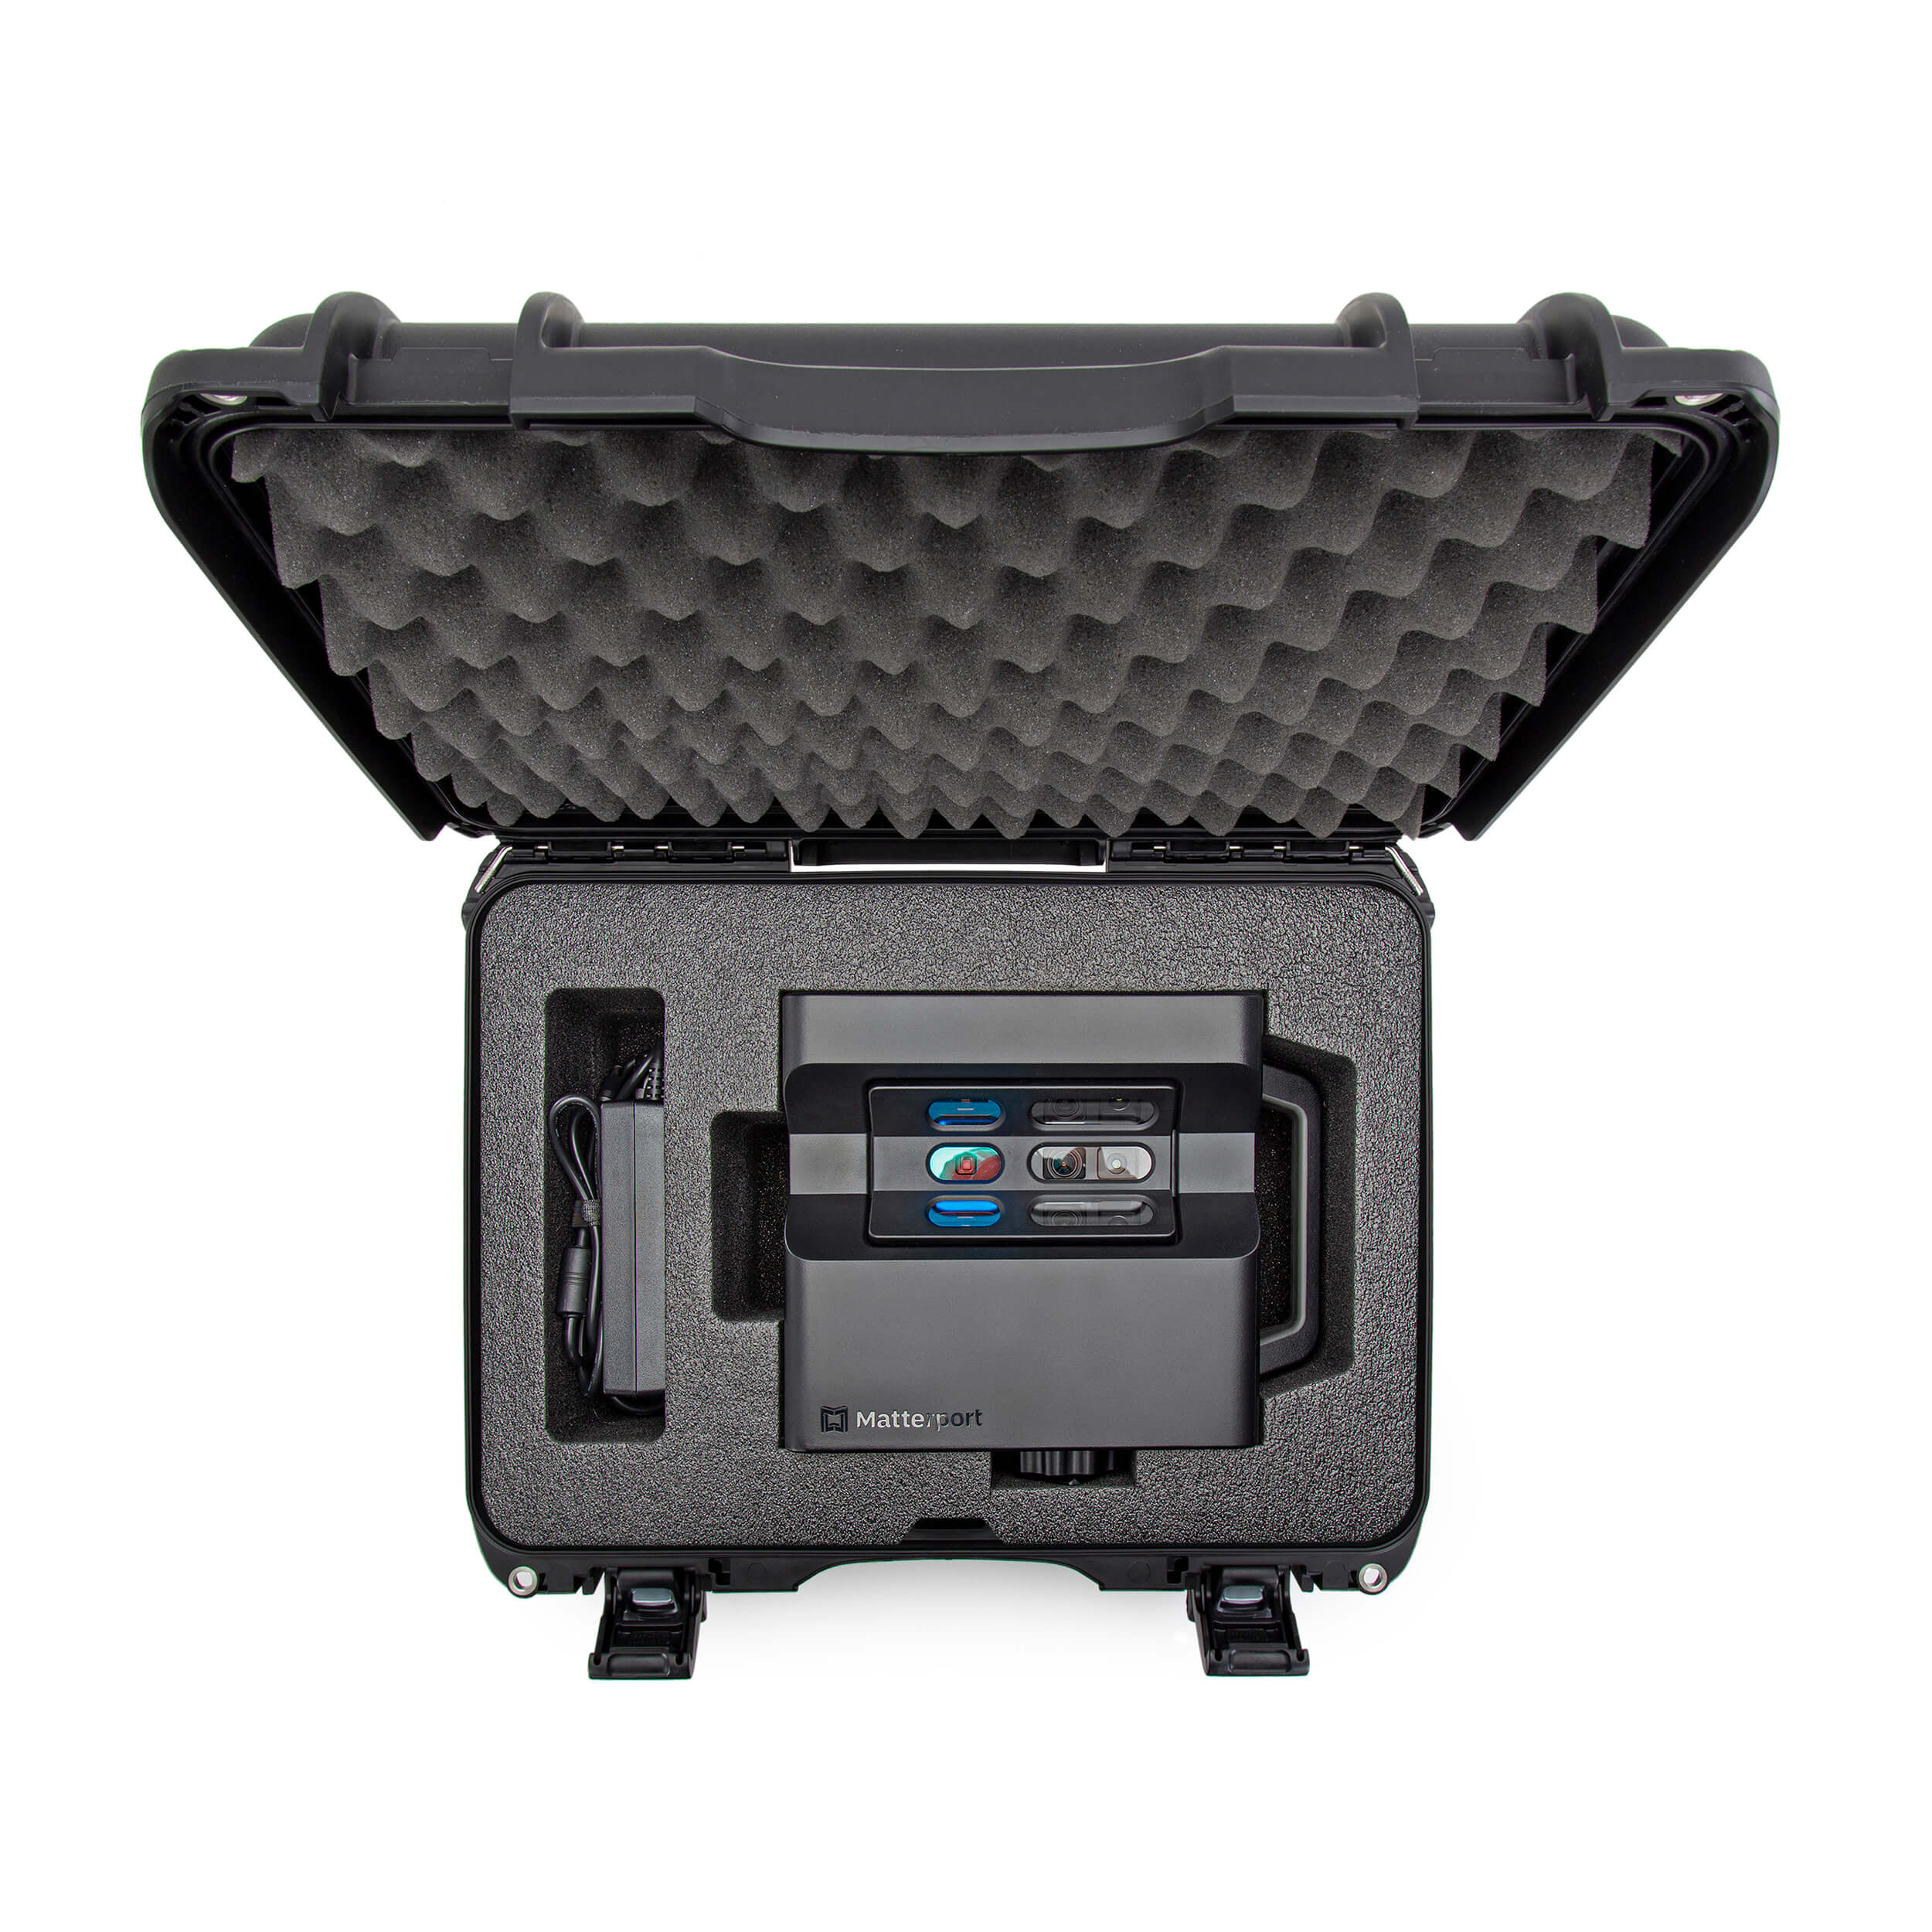 NANUK Media 925 For Matterport Pro1 or Pro2 3D Camera Black